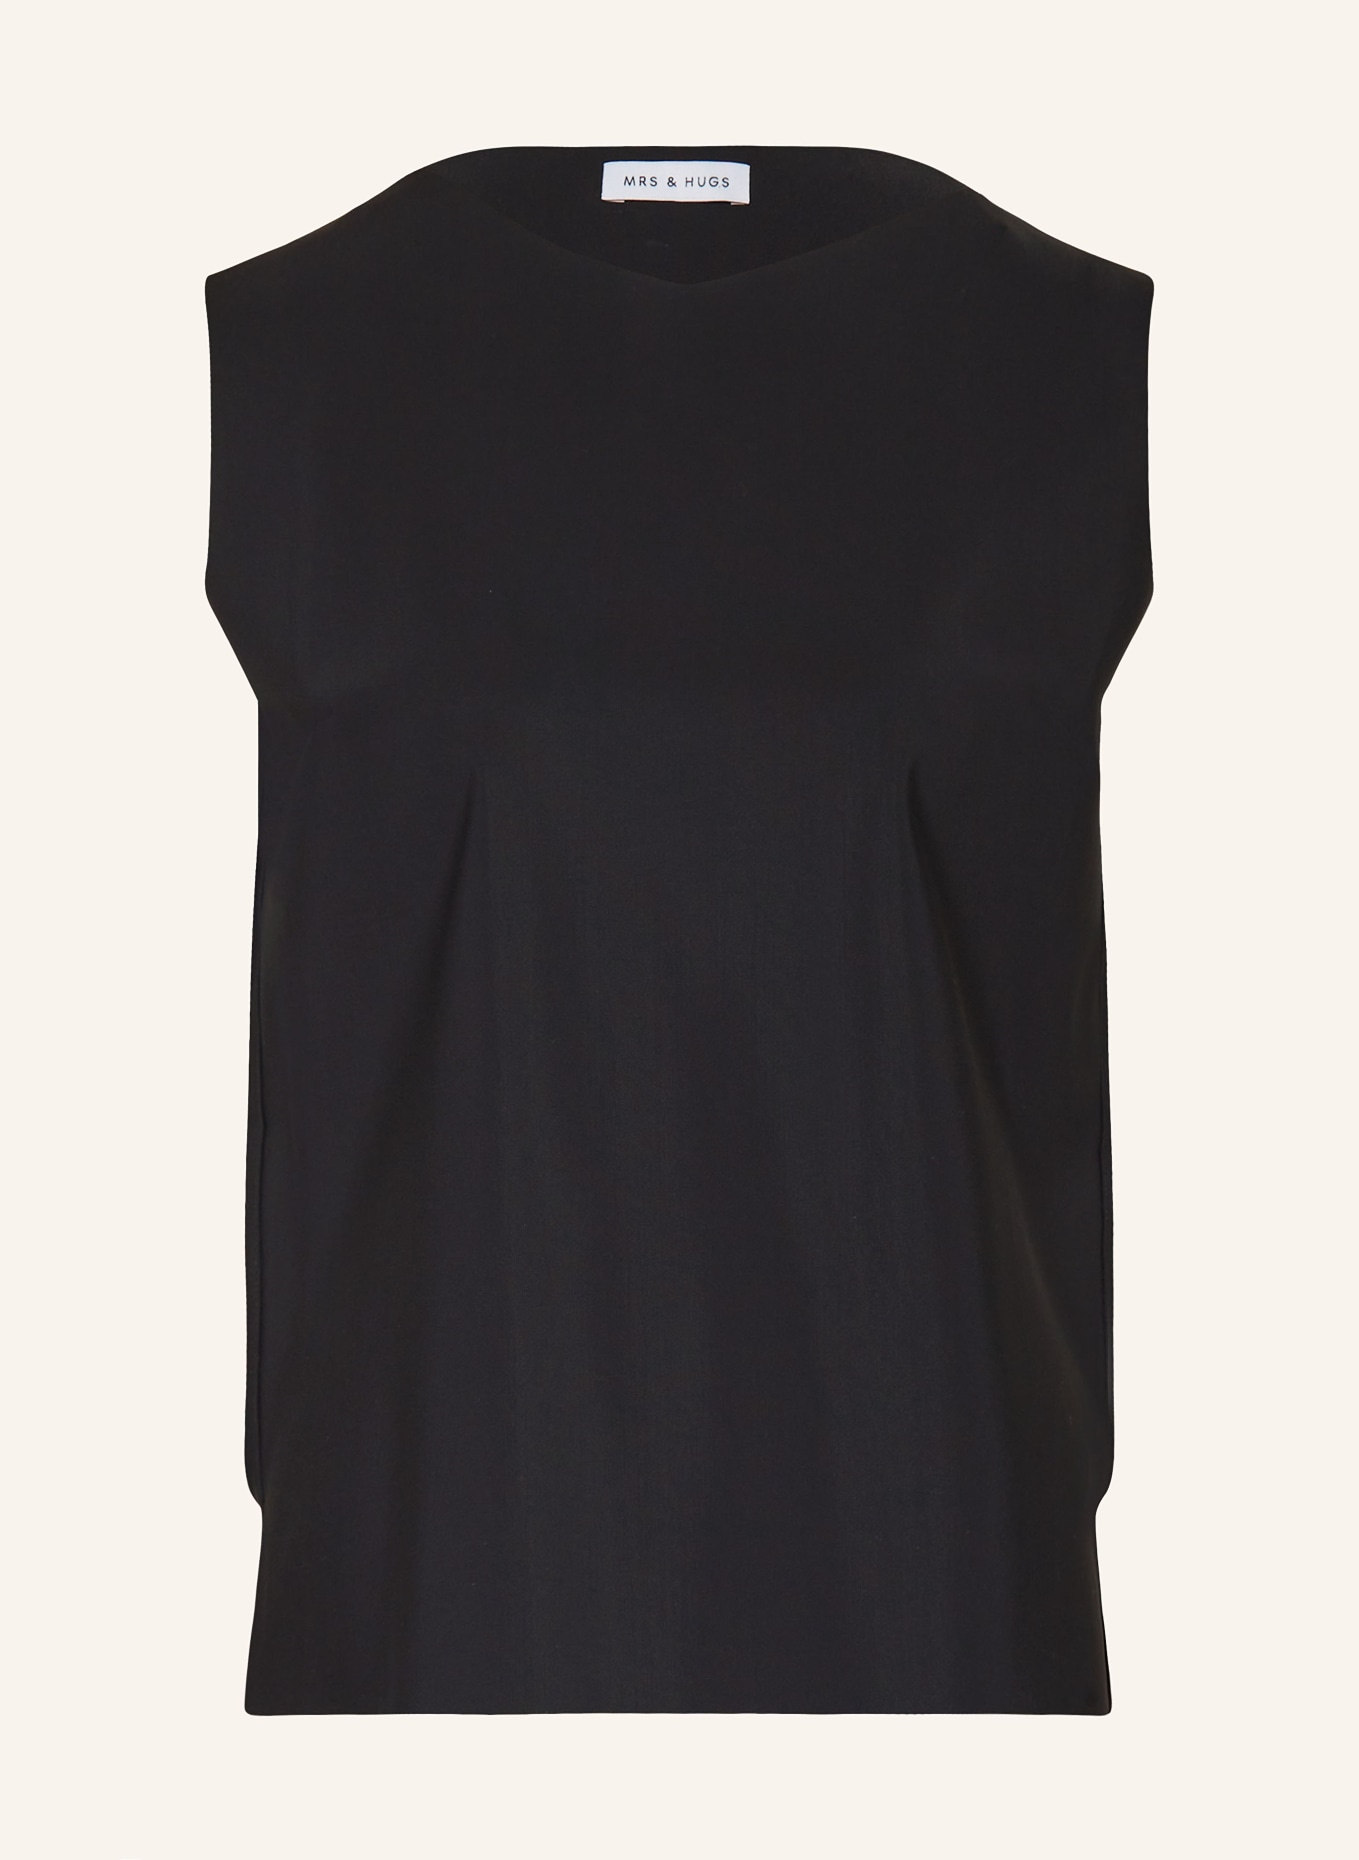 MRS & HUGS Blouse top, Color: BLACK (Image 1)